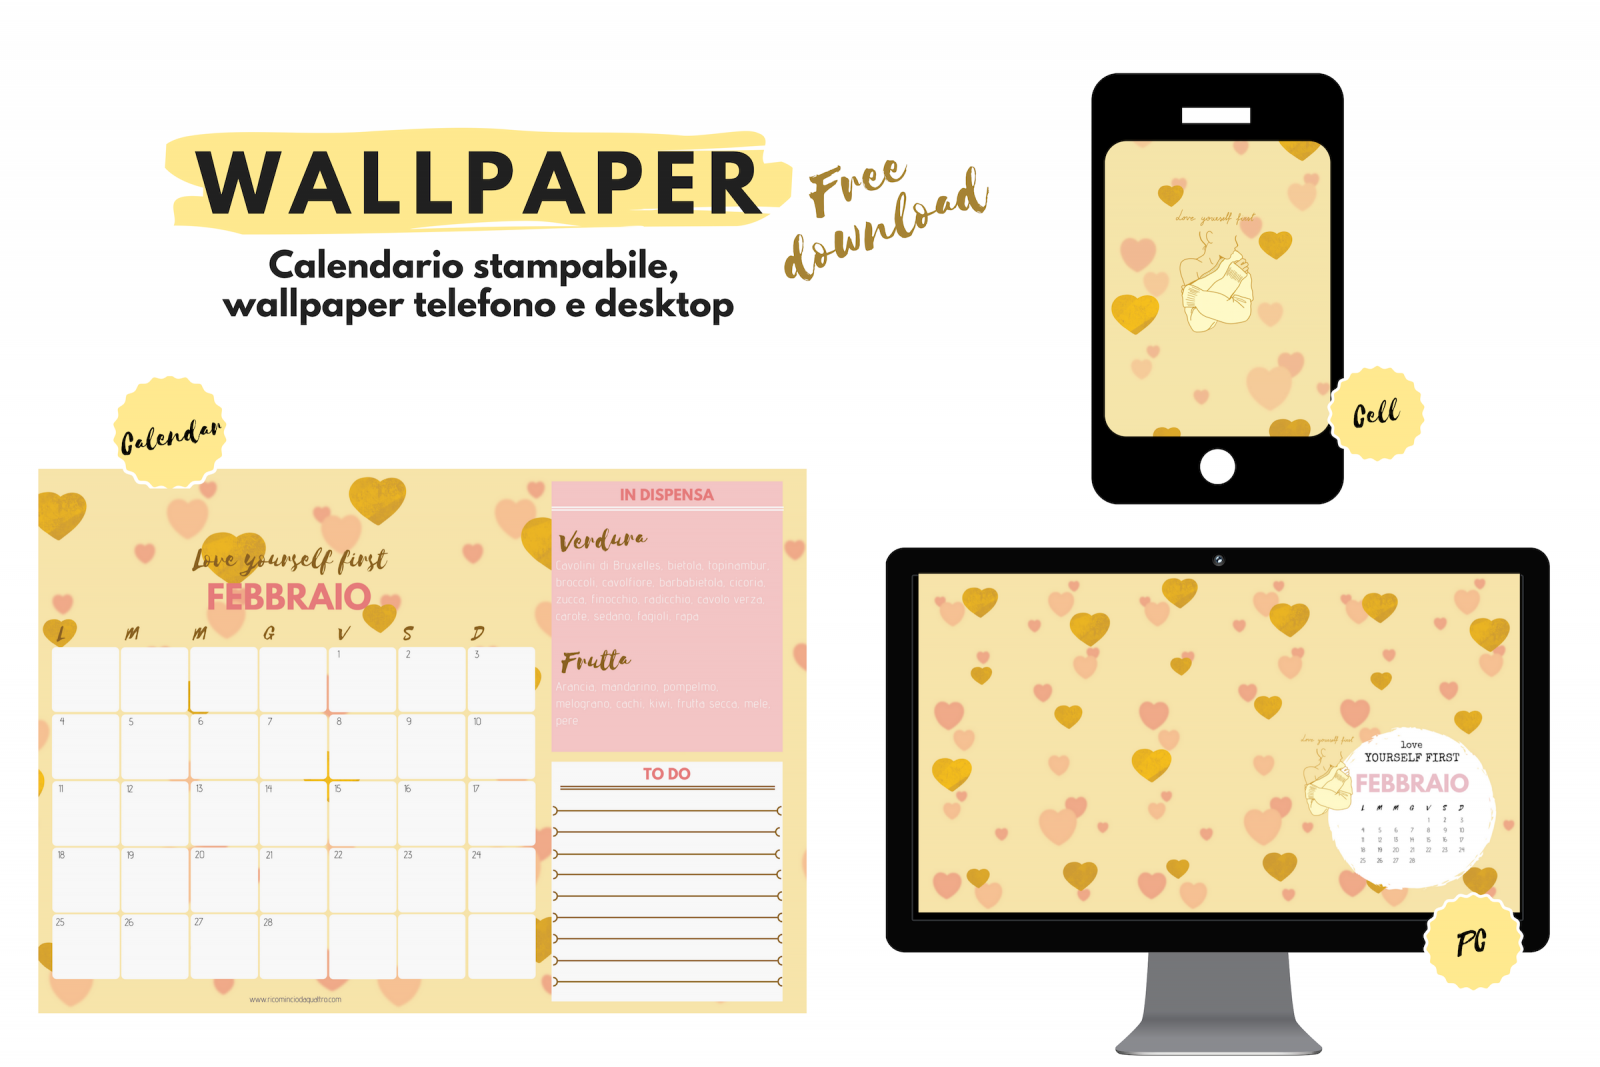 Wallpaper. Sfondi gratuiti per pc, tablet, smartphone e il calendario stampabile di febbraio Ricominciodaquattro